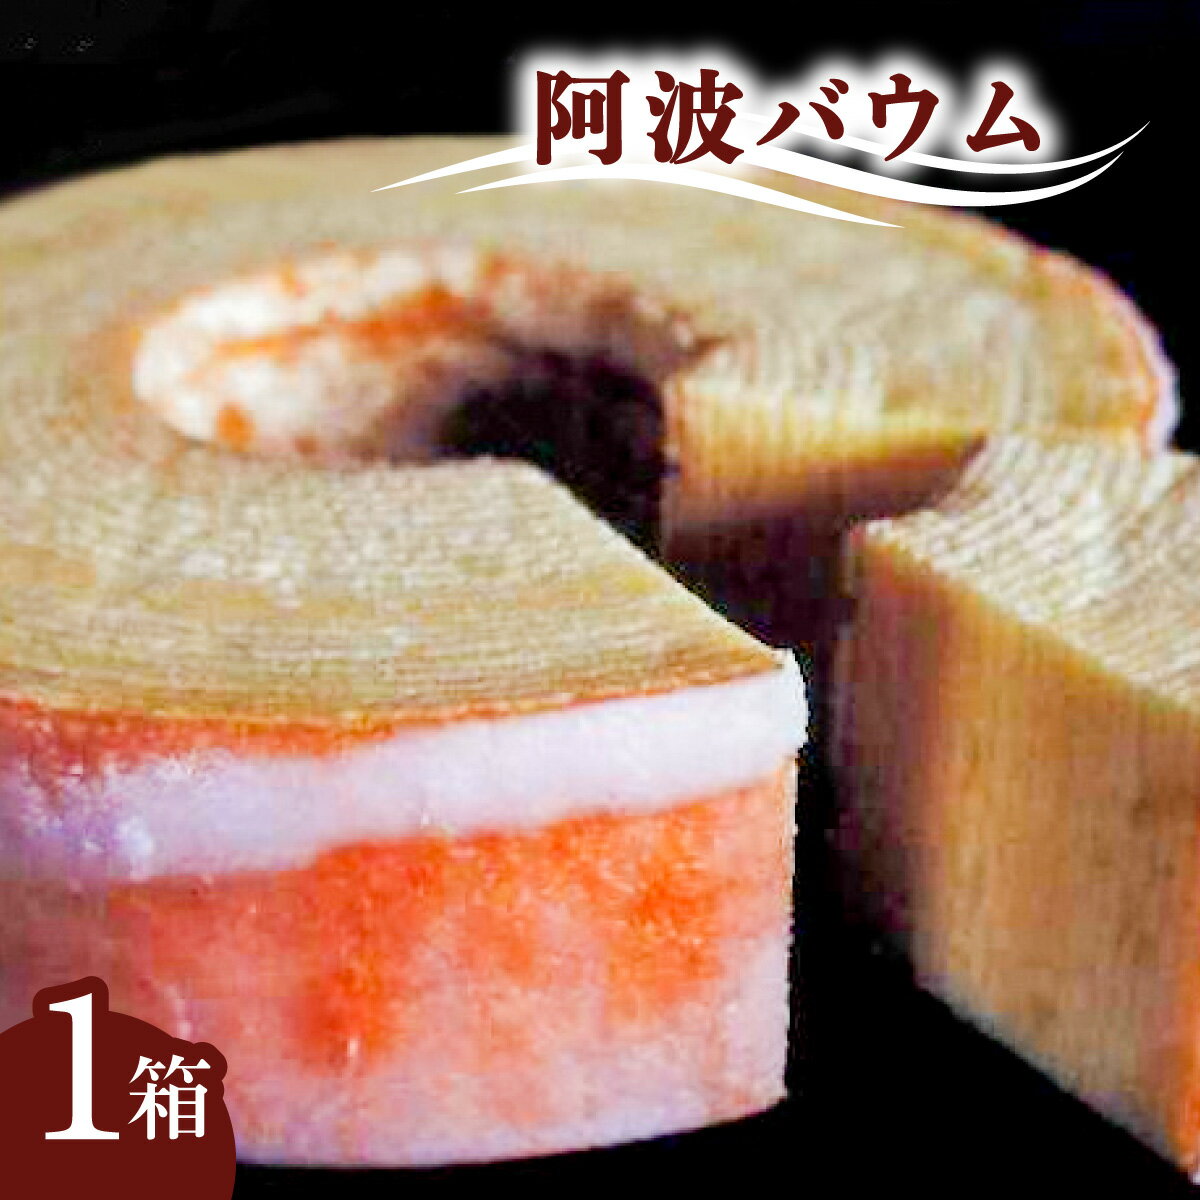 【ふるさと納税】 バウムクーヘン 阿波バウム 1個 菓子 洋菓子 焼菓子